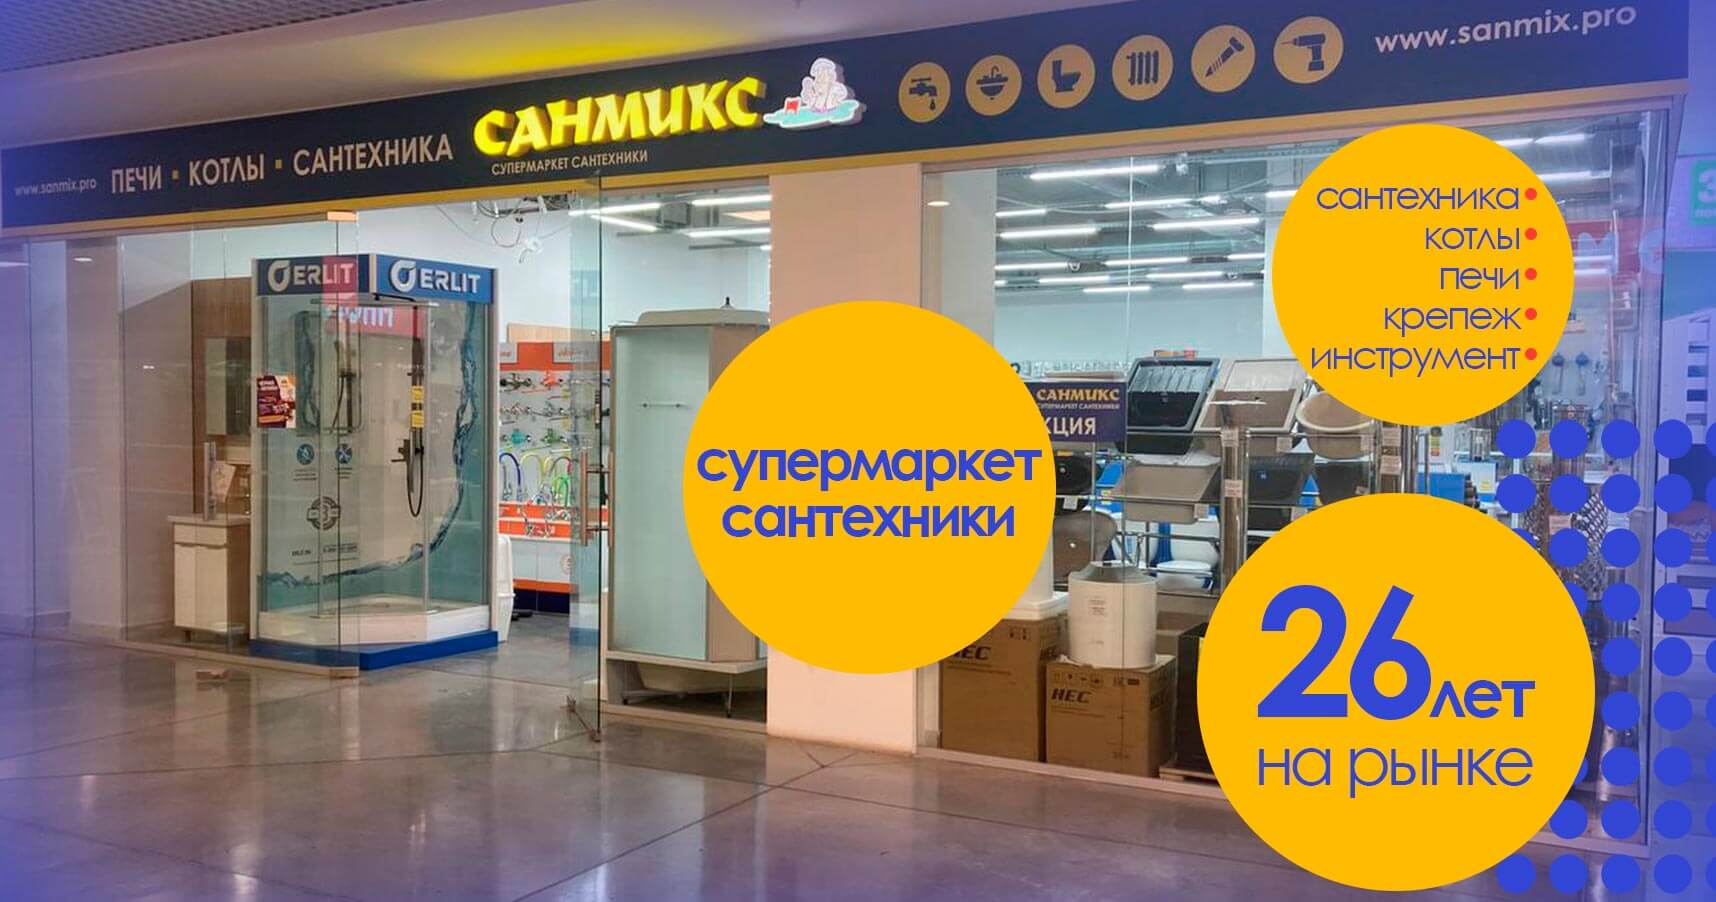 Франшиза «САНМИКС» — супермаркет сантехники